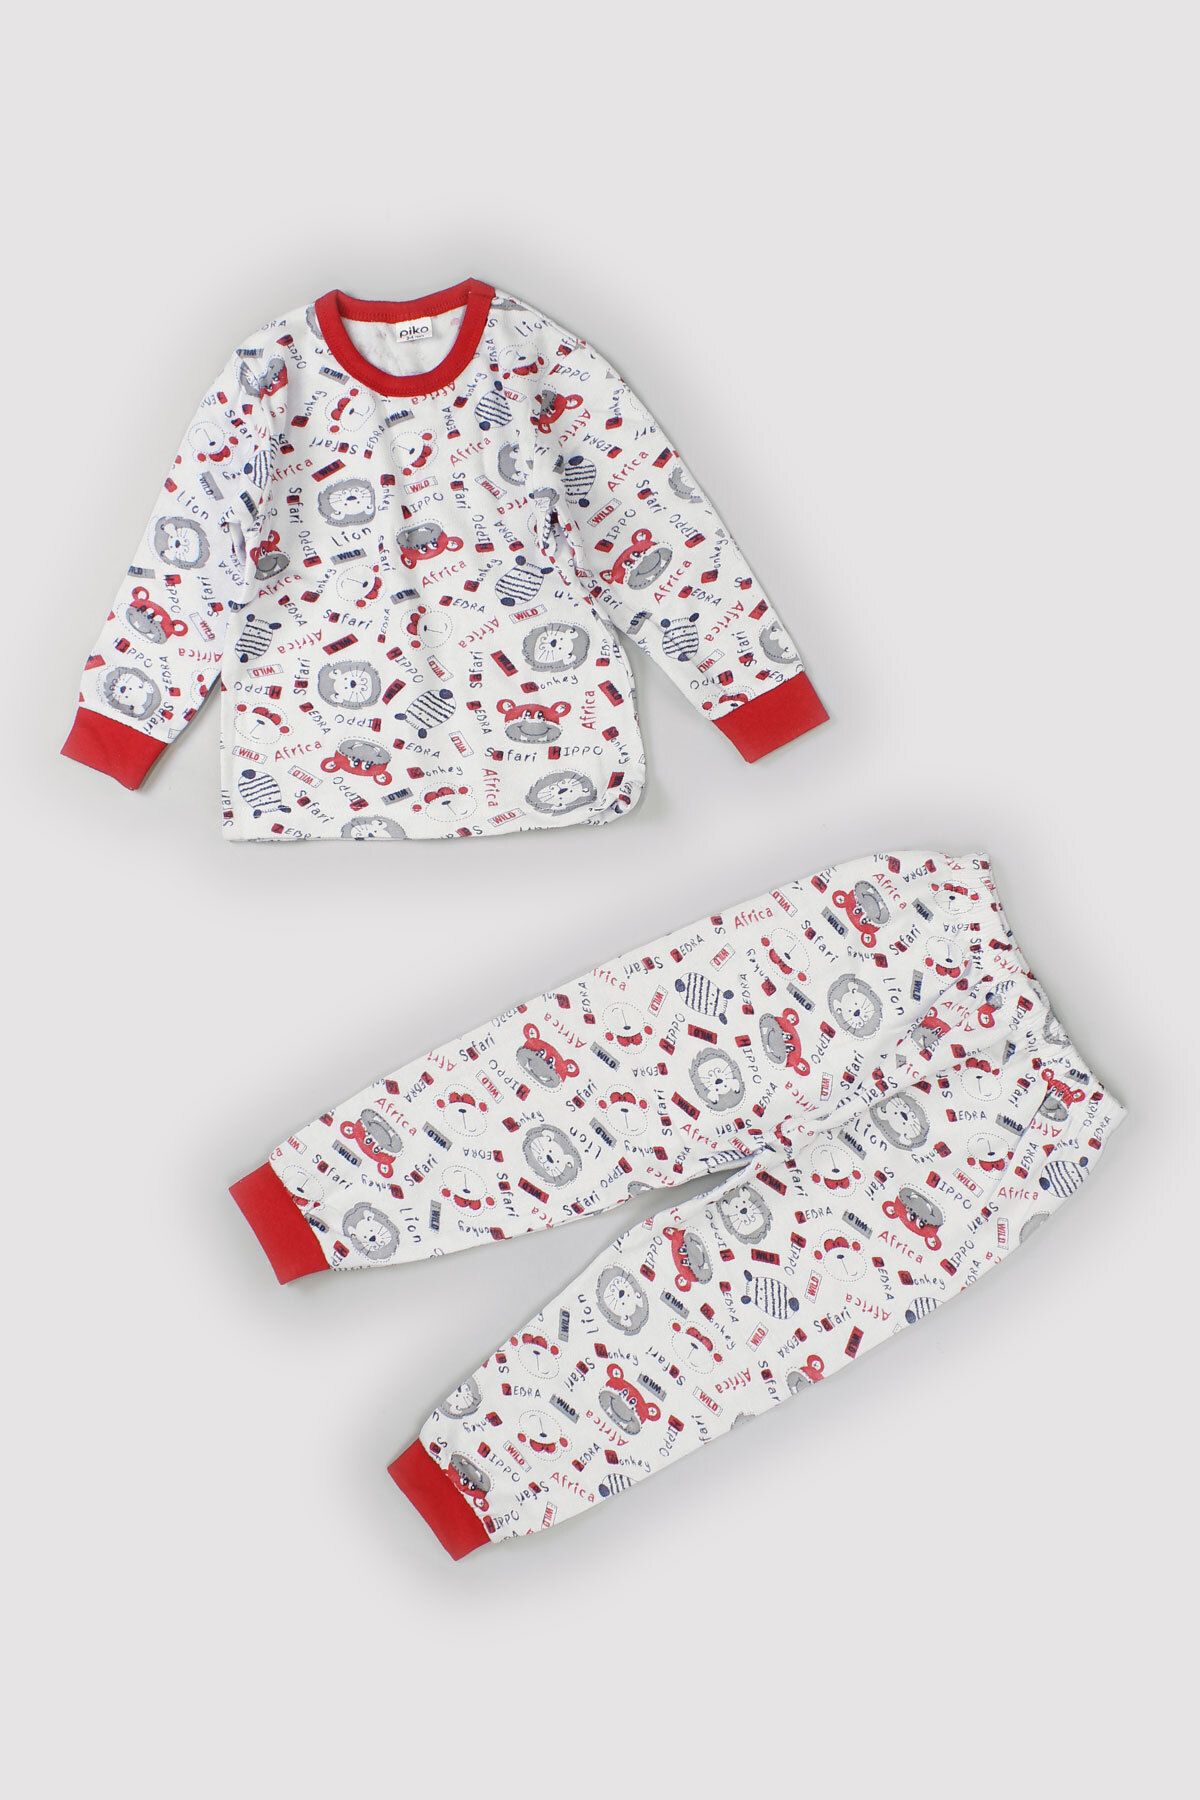 Peki Çocuk Bebe Mevsimlik Yumusak Pamuk Içi Tüylü Orta Kalin Karisik Desen Mansetli Pijama Takimi 9546